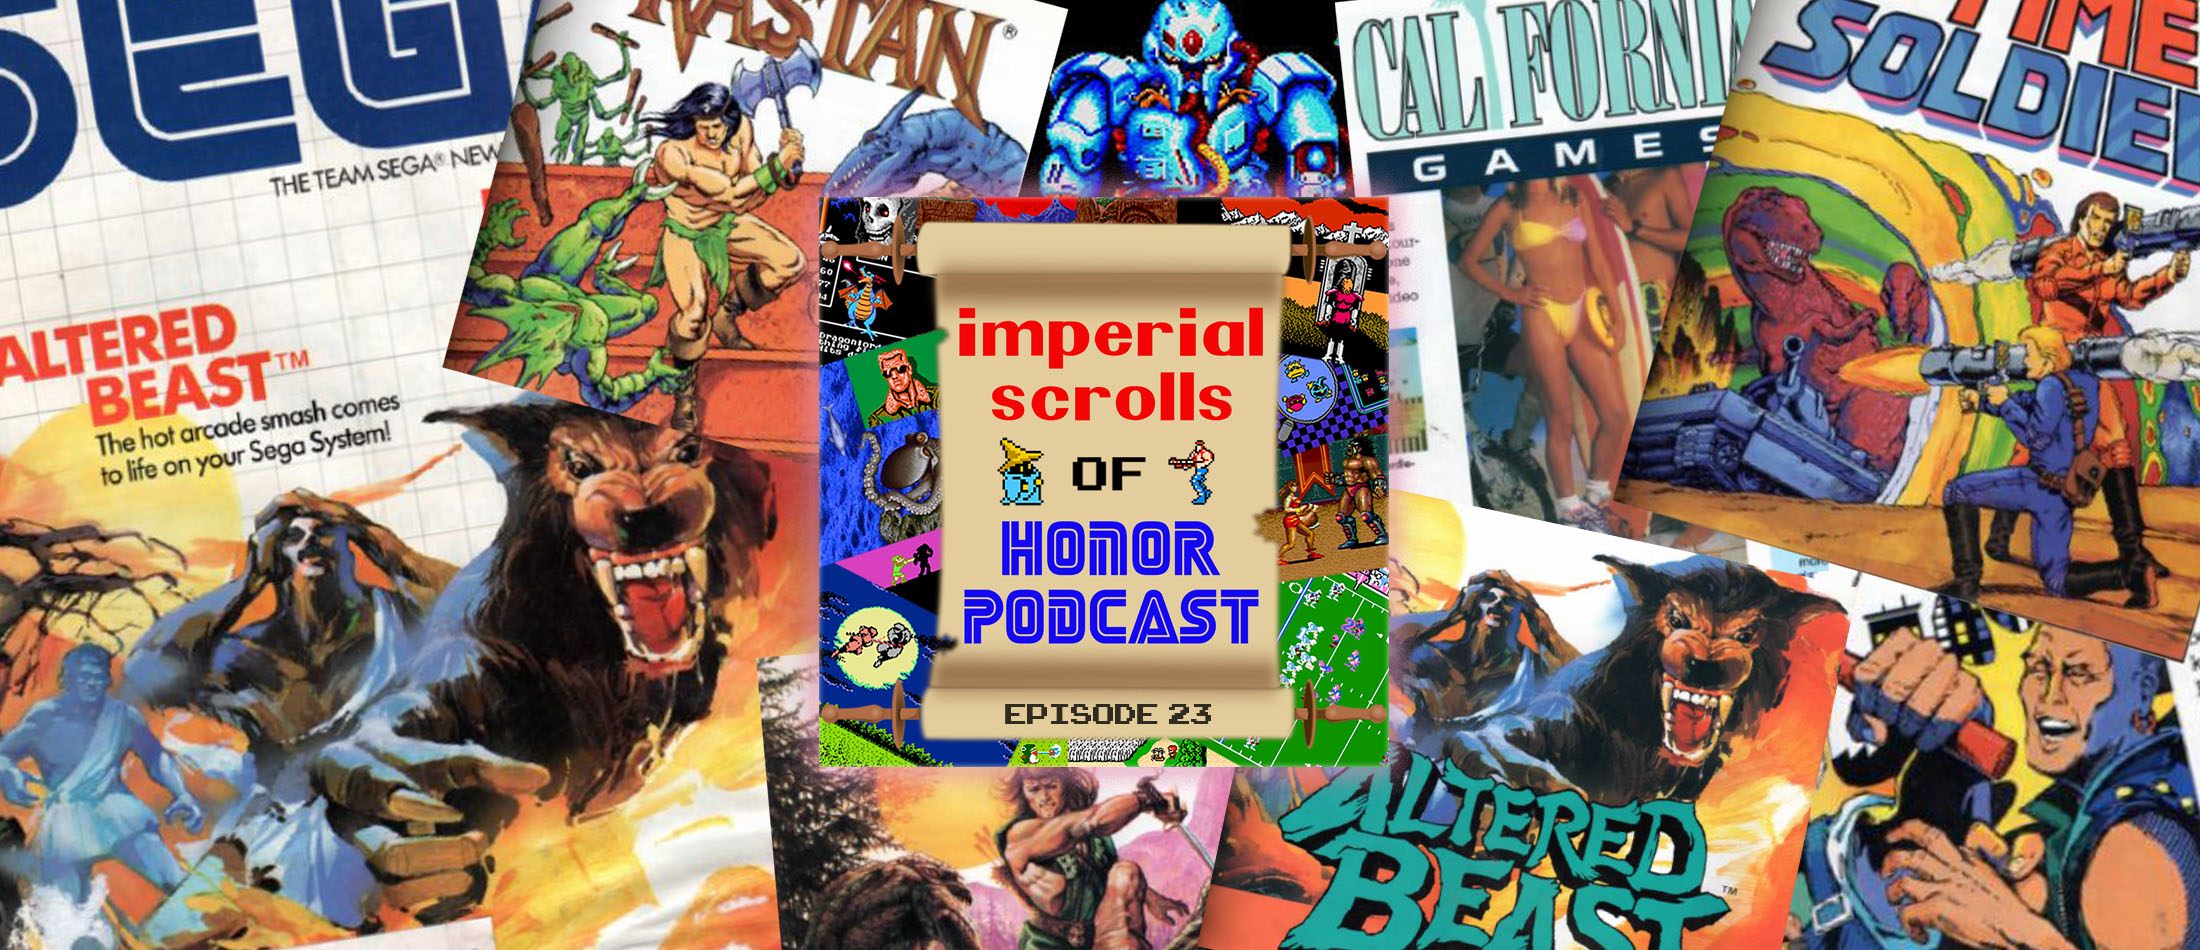 Imperial Scrolls of Honor Podcast - Episode 23 - Sega Team Newsletter #6